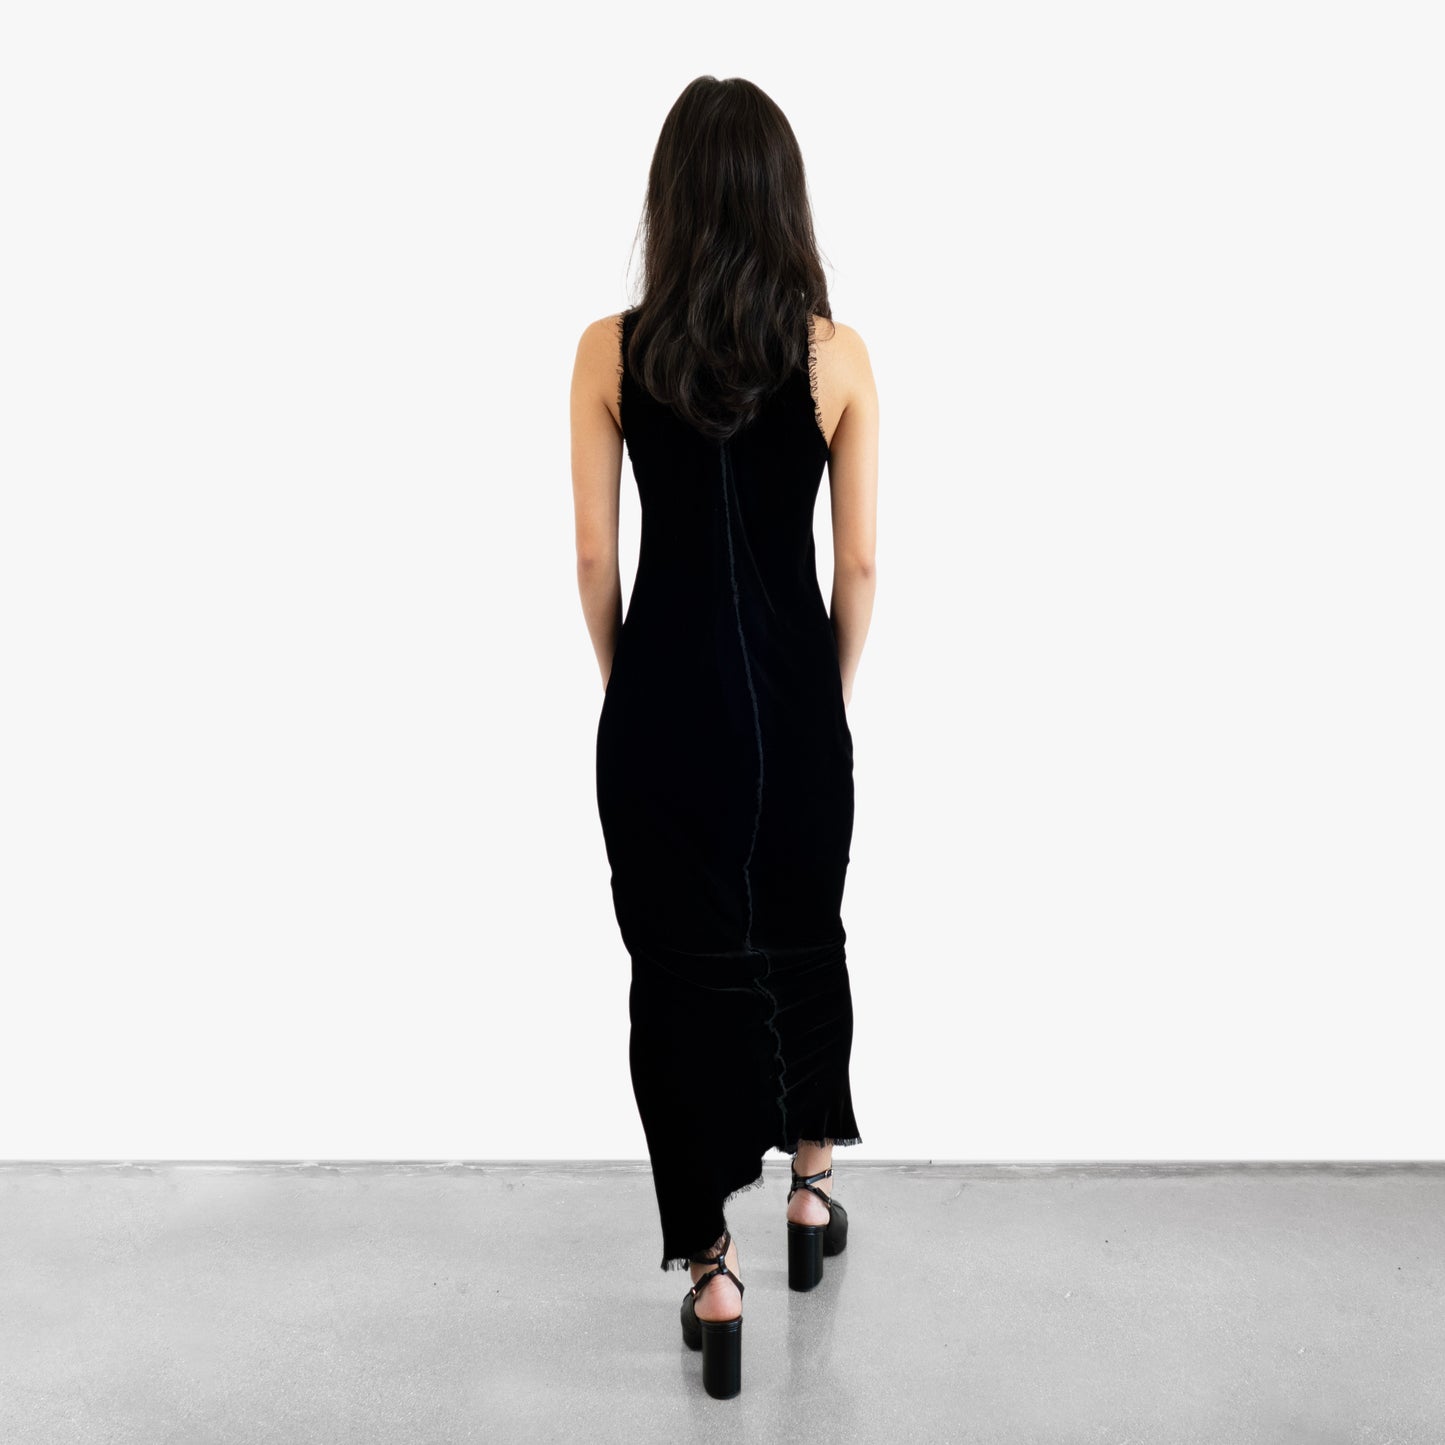 Model wearing a black velvet dress